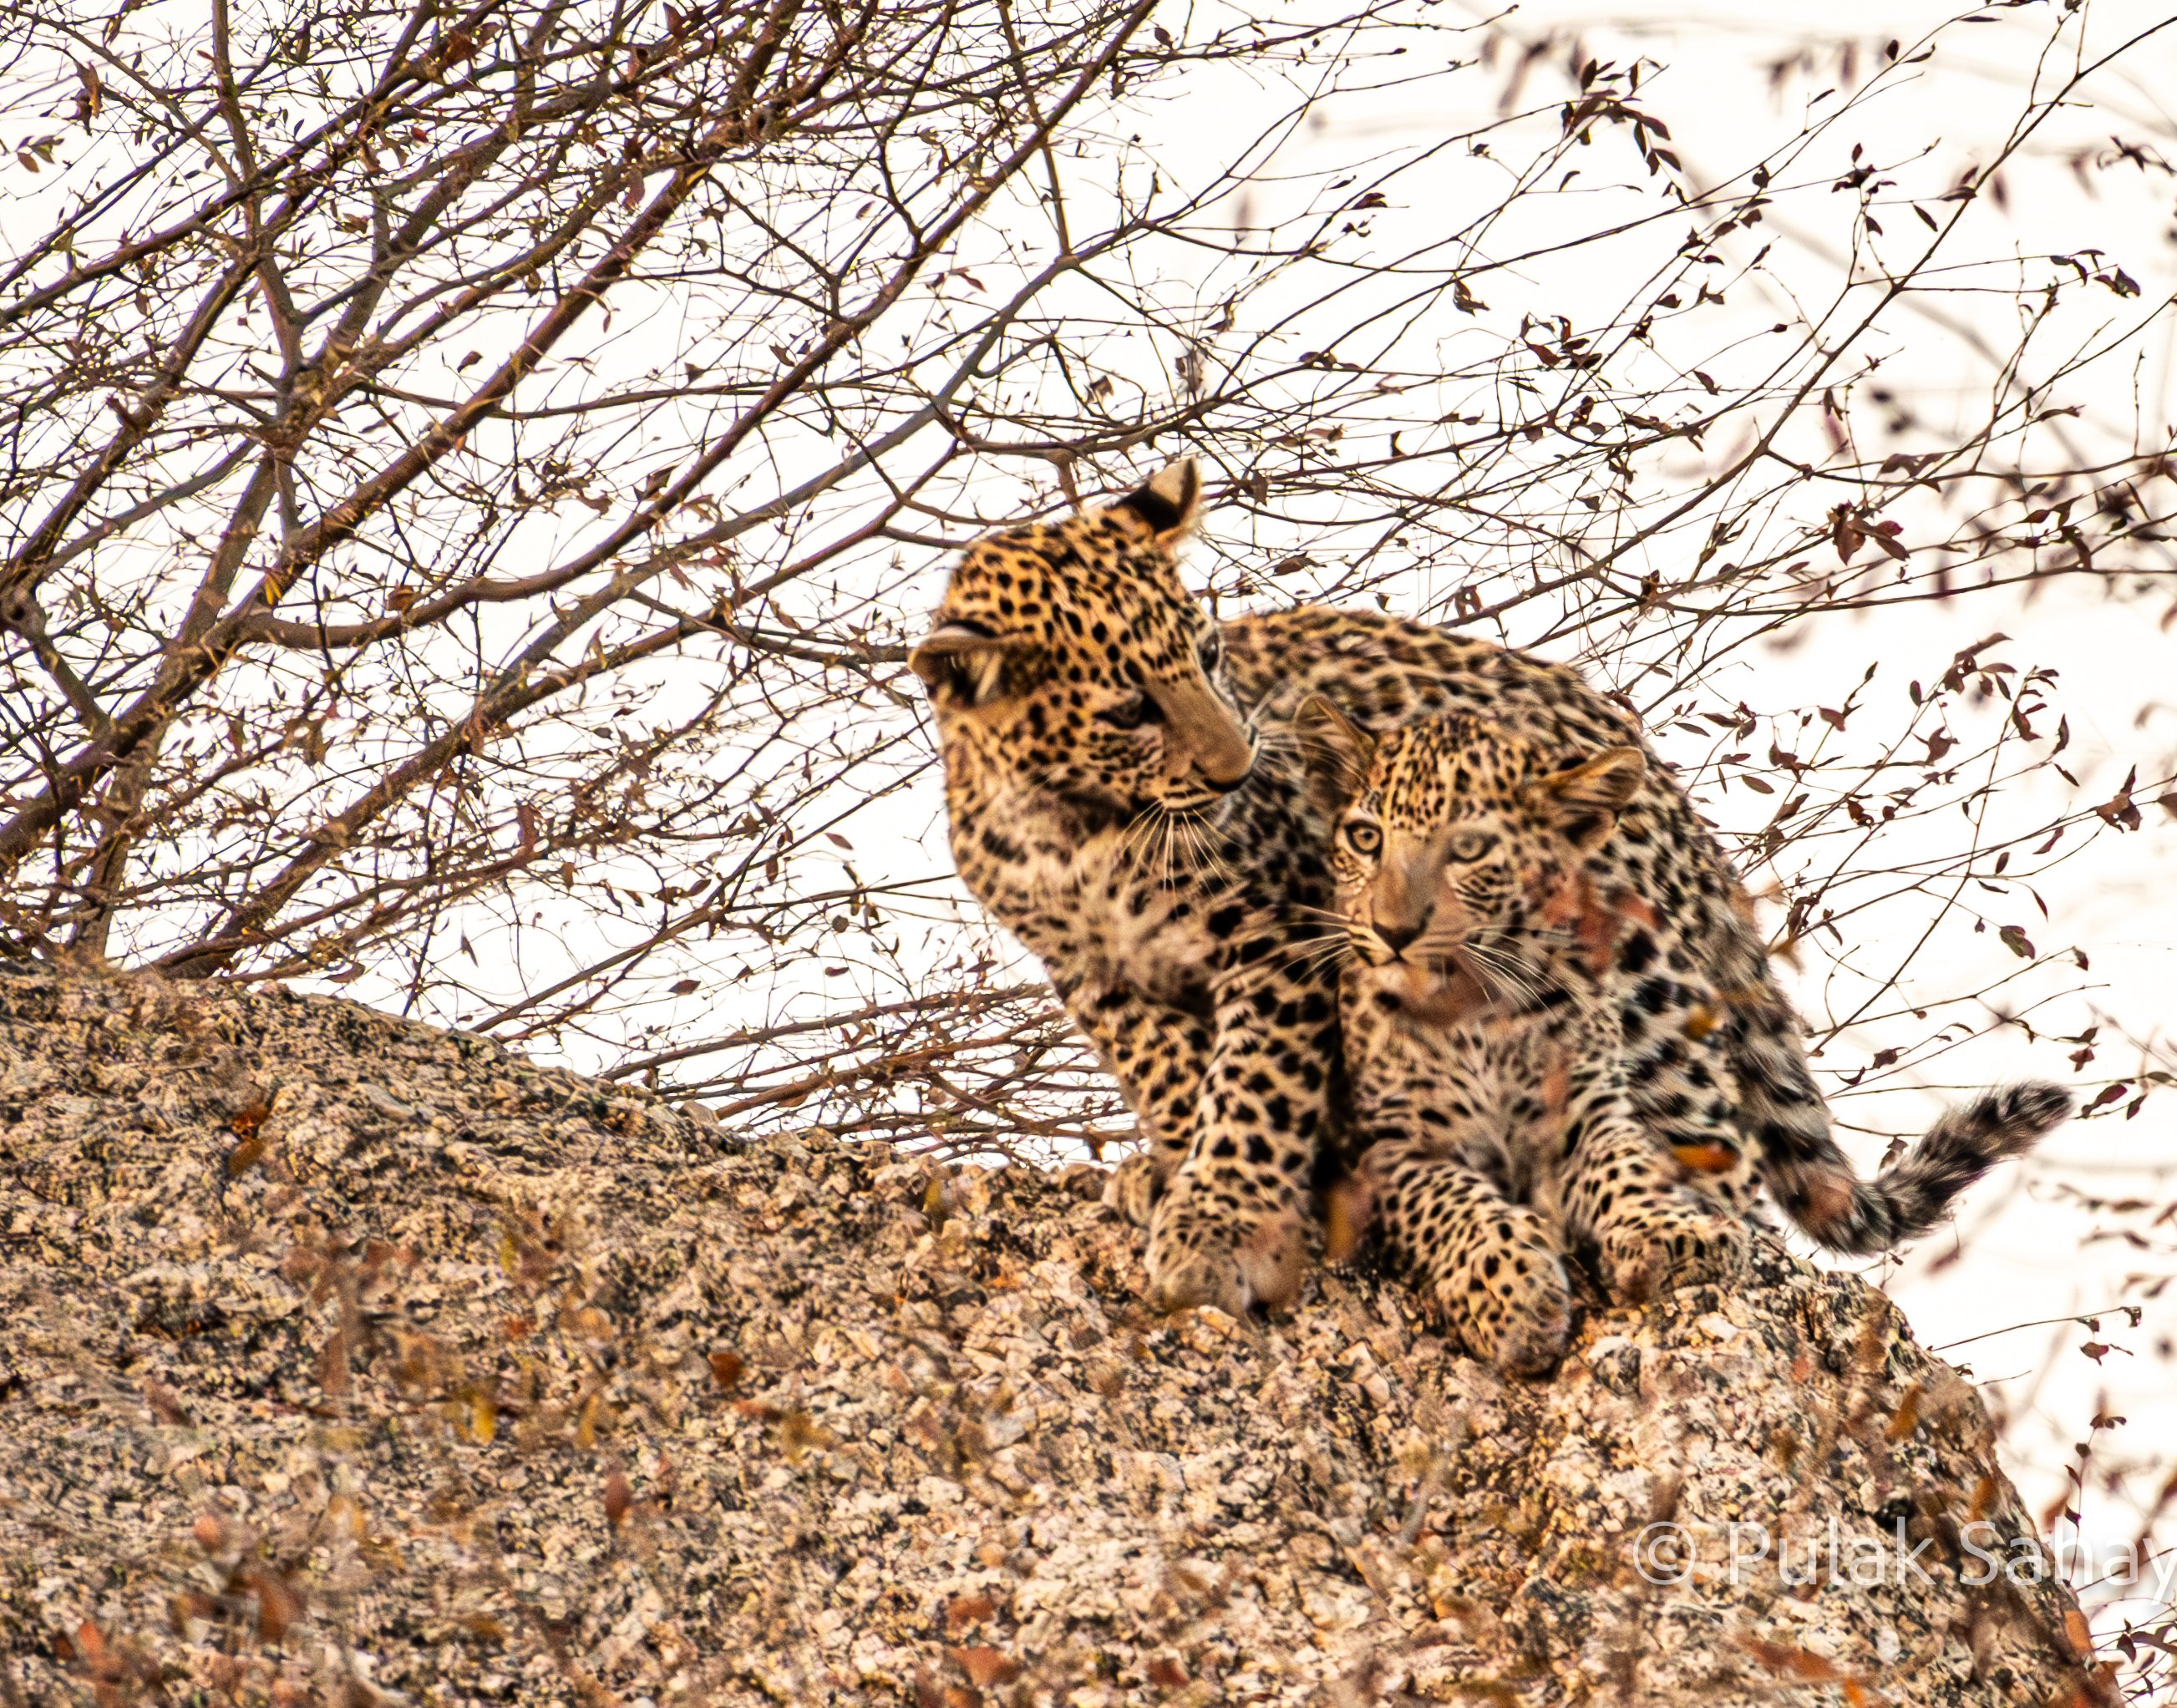 Leopard cub sitting on cub